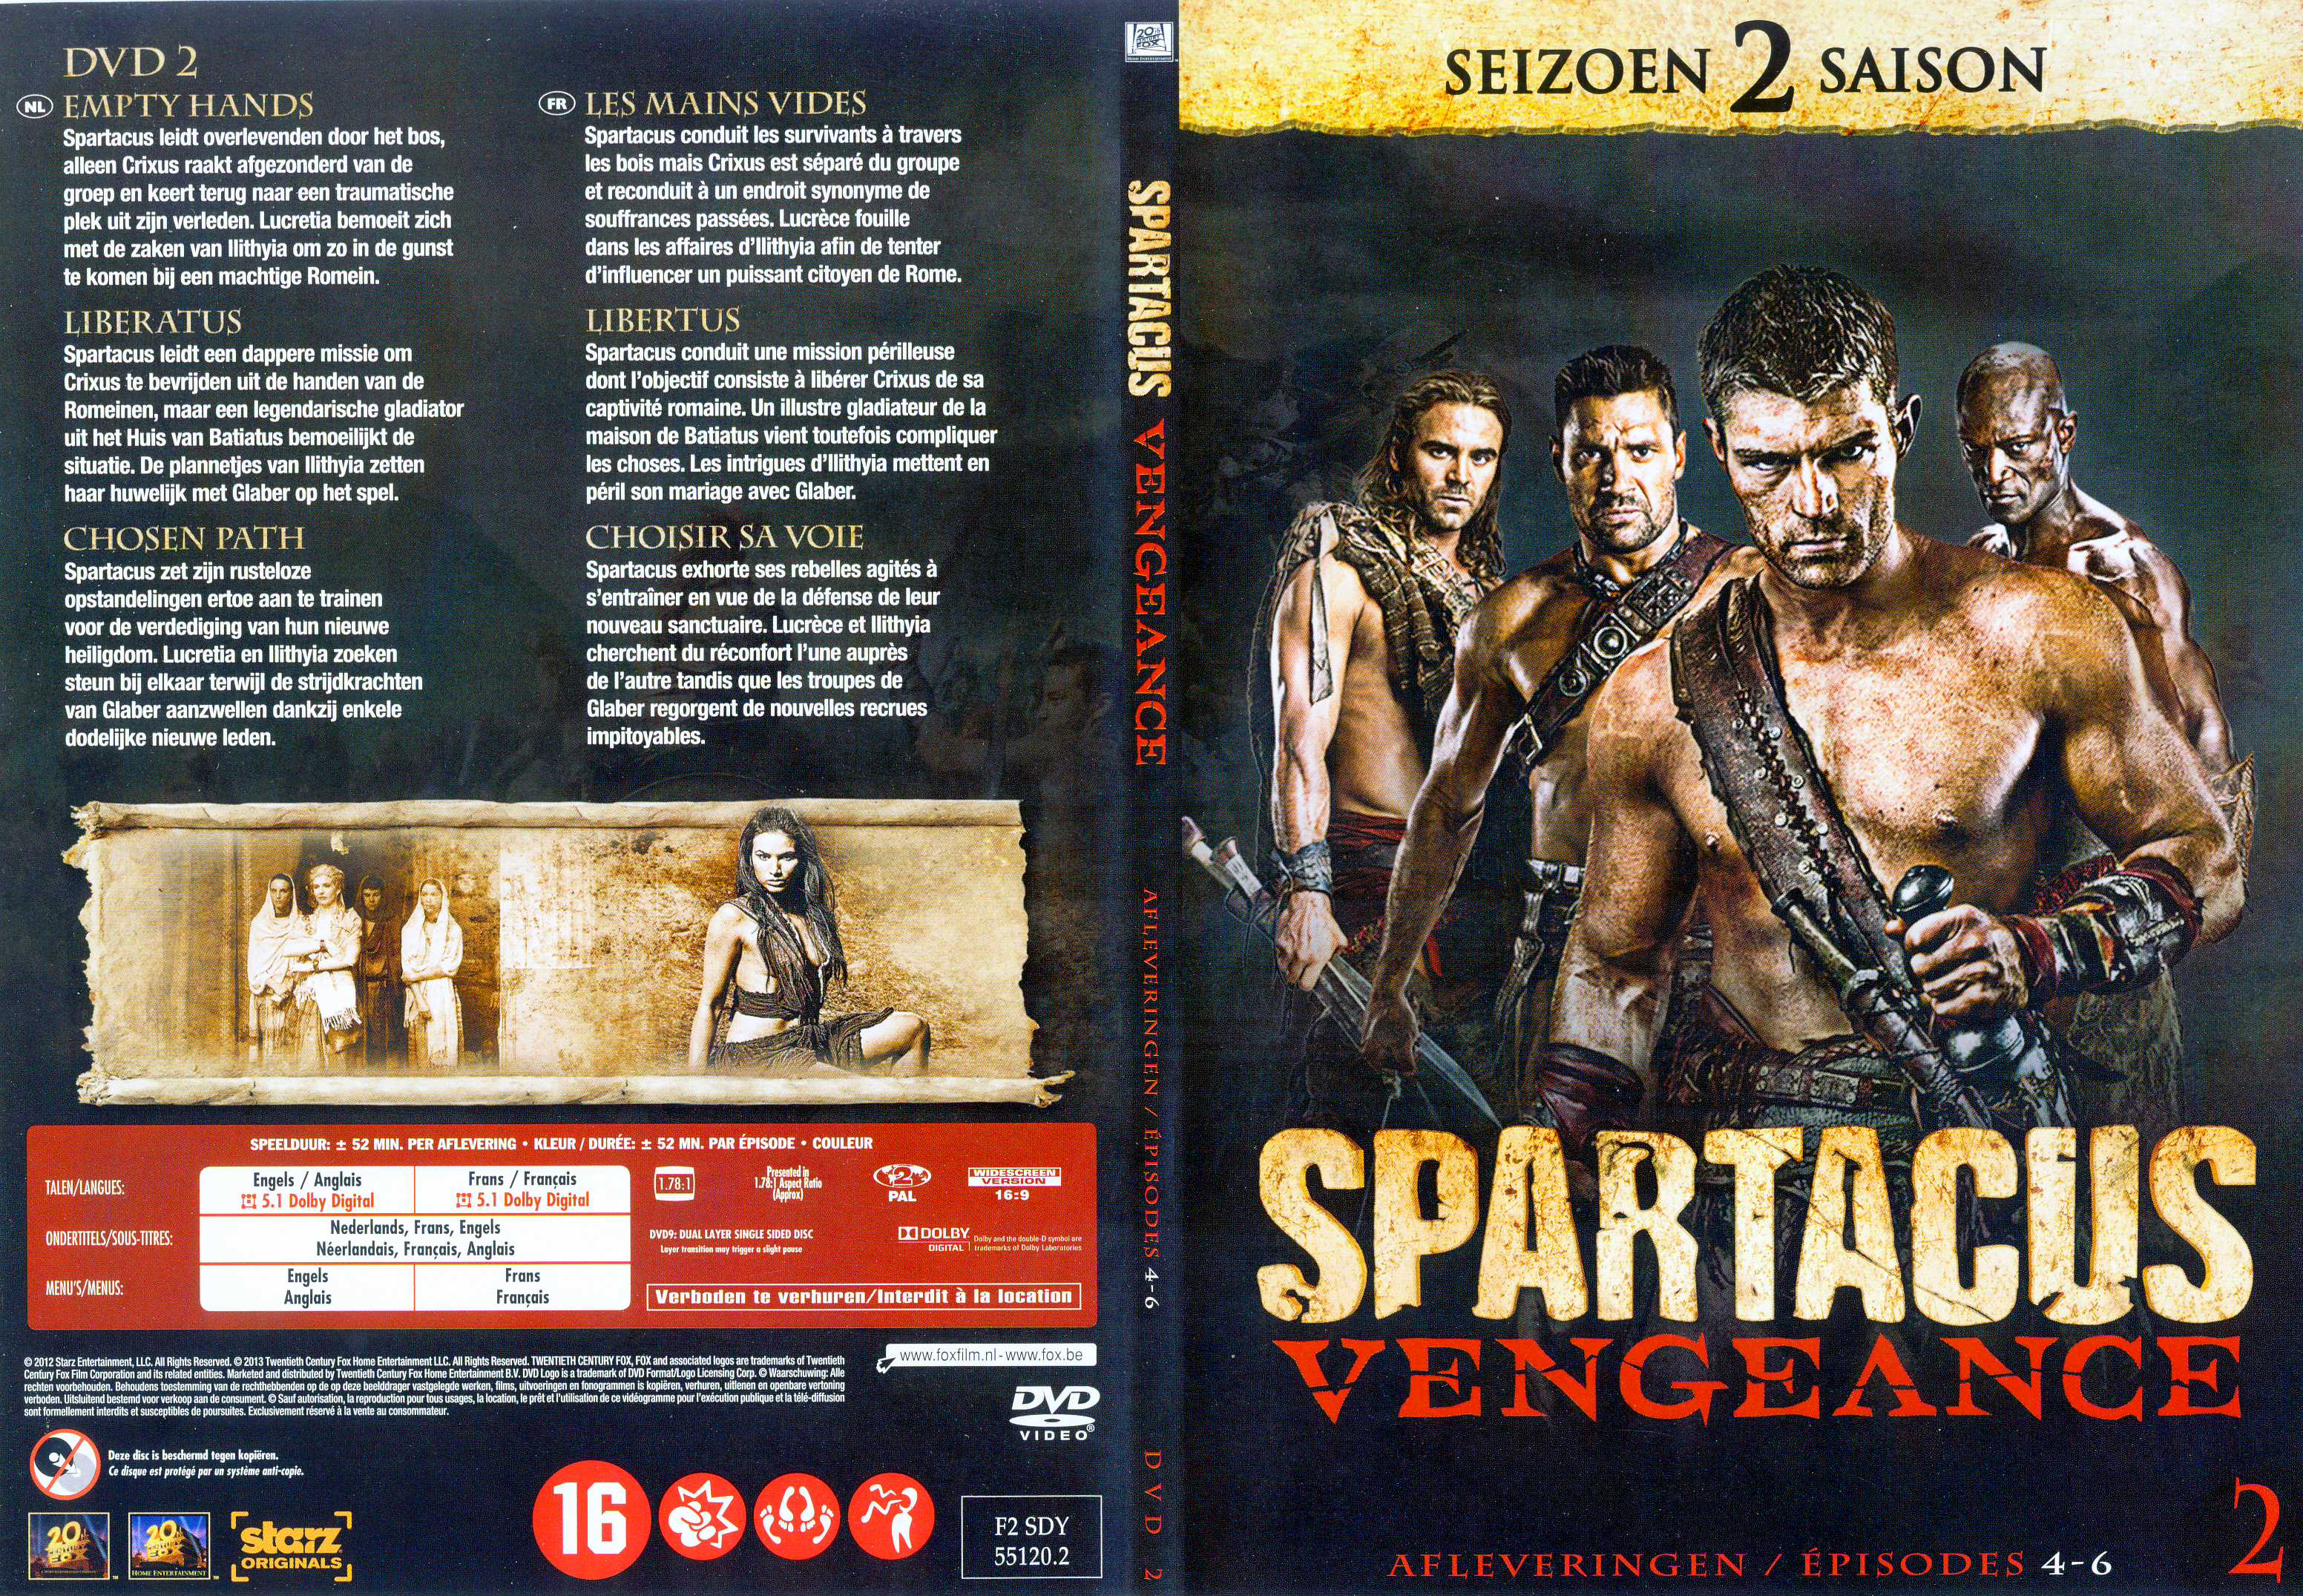 Jaquette DVD Spartacus vengeance Saison 2 DVD 2